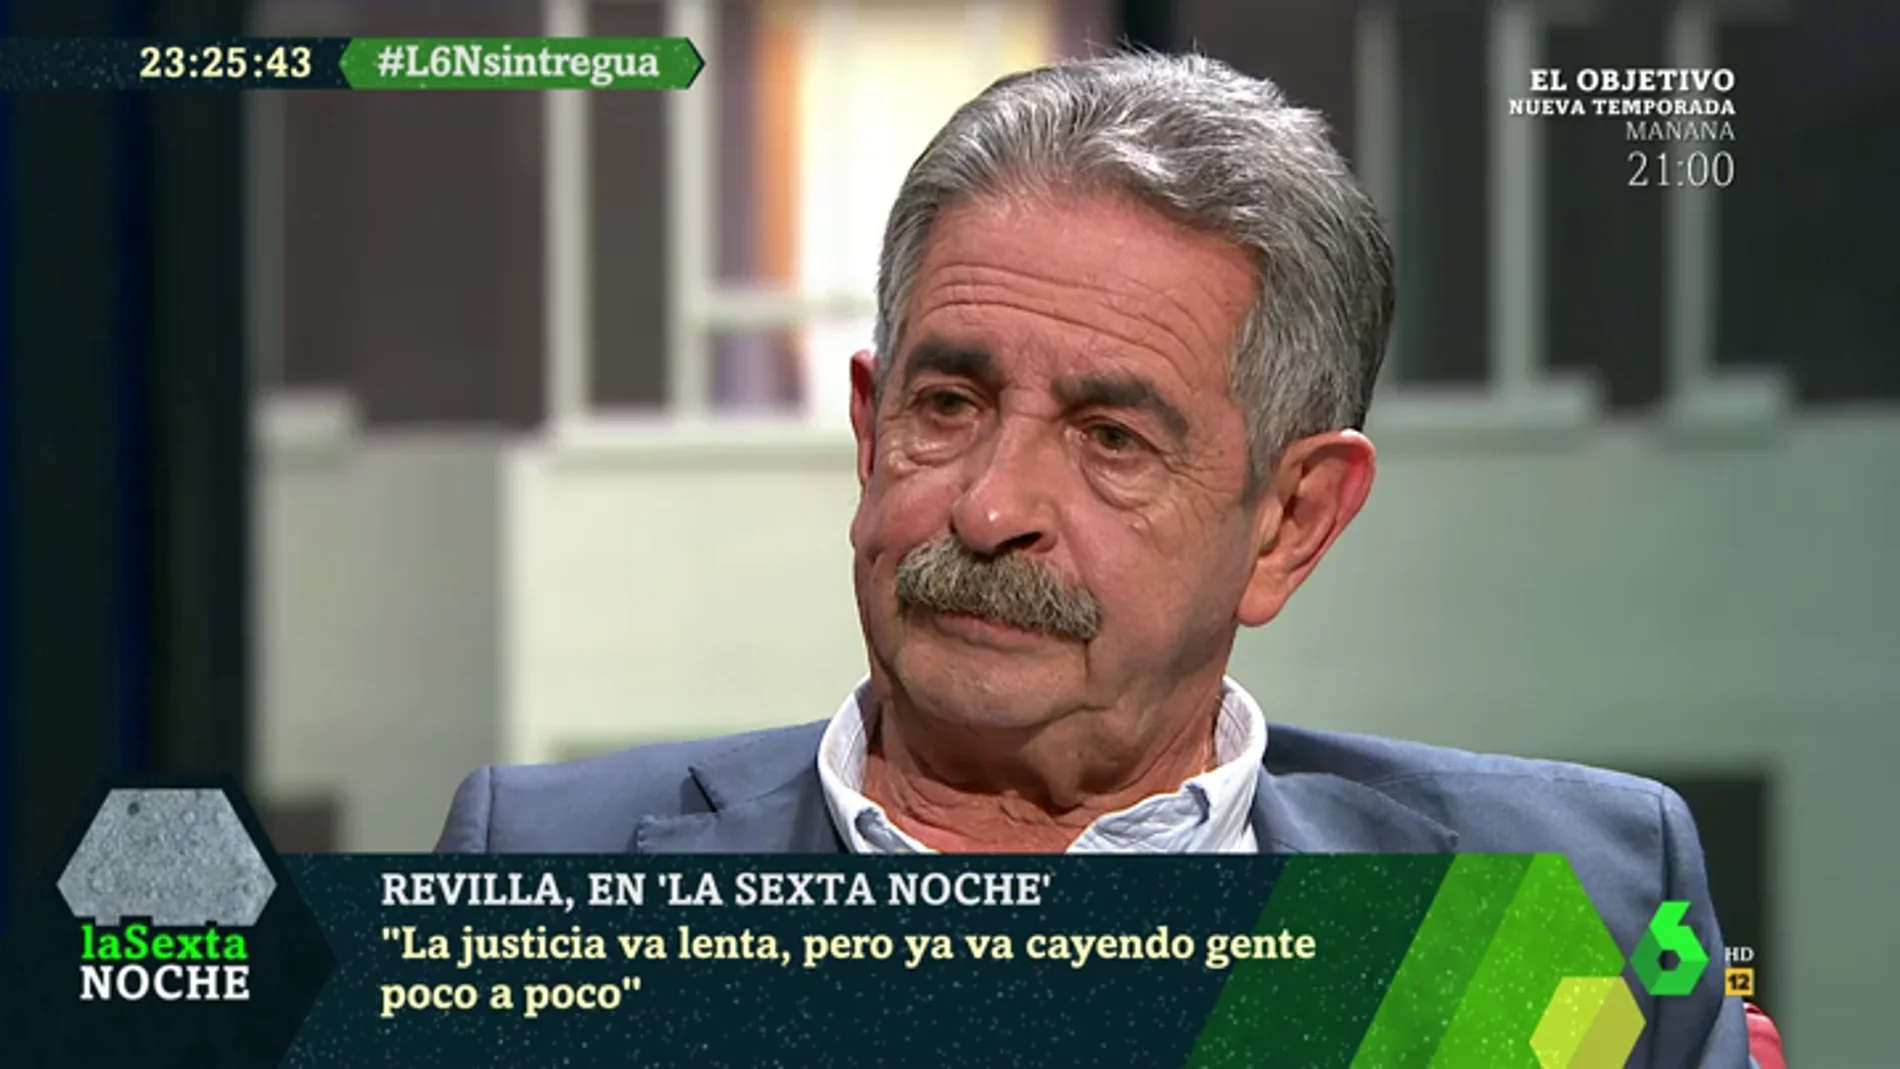 Revilla confiesa el motivo del deterioro de su relación con Sánchez: "